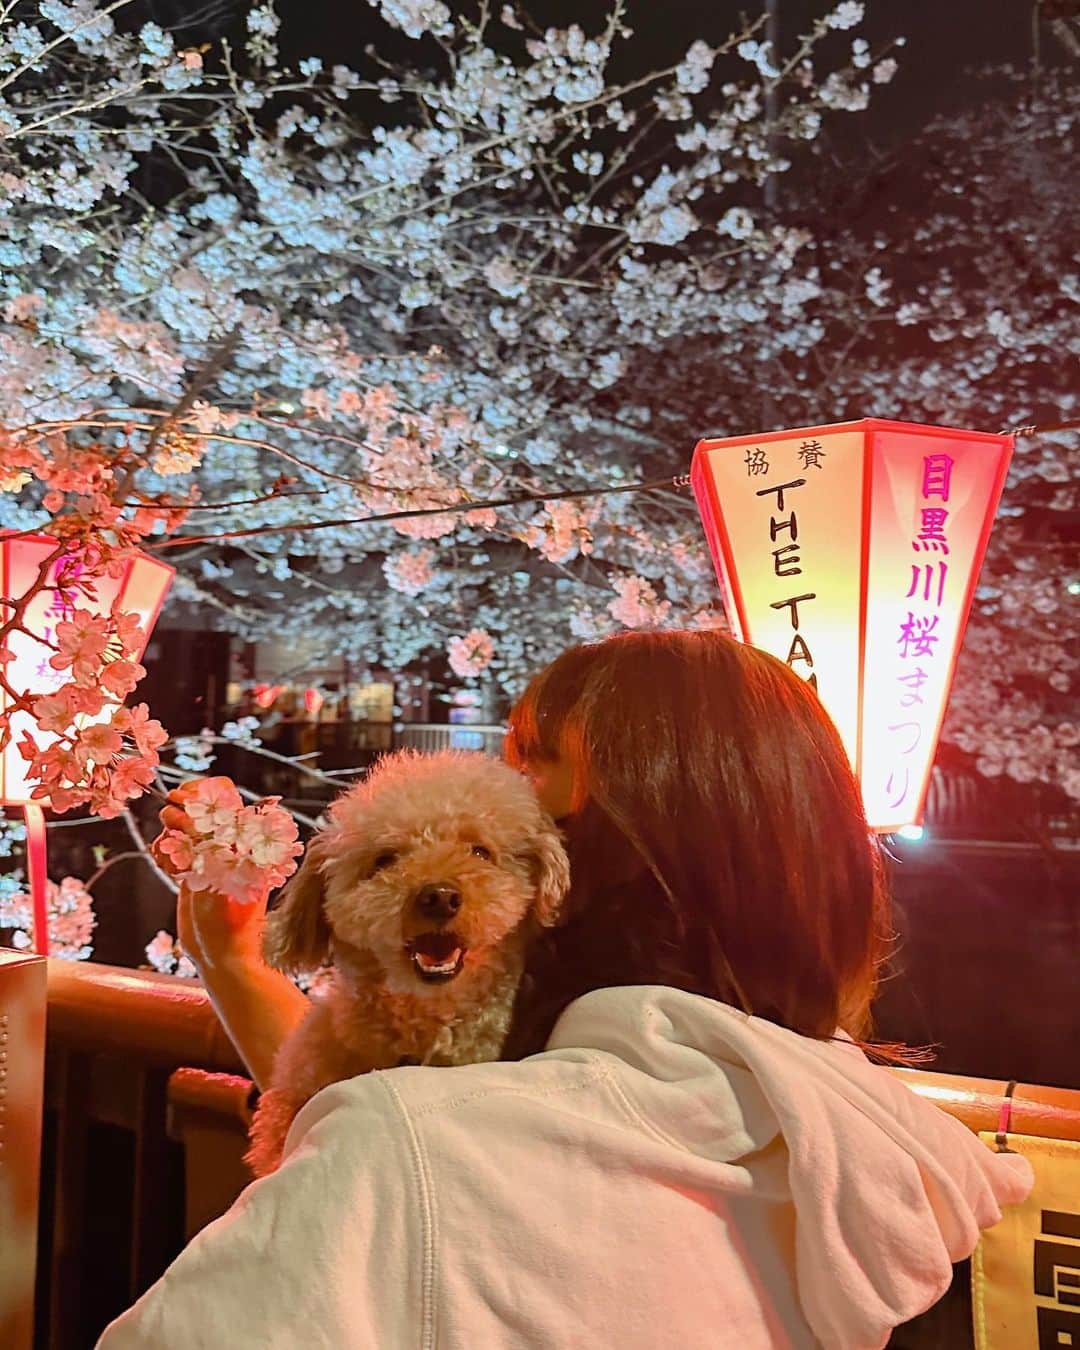 熱田久美のインスタグラム：「@kuumi1125 ←花より団子アカ🍡‎🤍  ------------------------------------  東京では平年より9日早く、昨年より5日早く桜が満開に。 桜きれいだった…  と、そんな今日ですが WBCー！日本優勝✨🥇🏆✨  今日は仕事の合間で聞いてたから、ちゃんと観れてないけど 最後はしっかりとおさえて…ほんとすごかった。  テレビ観て応援していただけだけど 勉強になること、たくさんあった。  いち視聴者だから真意は分からないけど、監督の一つ一つの決断の背景とか。選手の気持ちとか。  すべてはみんなが同じひとつのゴールに向かって進み続ける情熱。考えるほどぐっと来るものばかりで🥺  準決勝の試合後のインタビューで 大谷選手の「必ず塁に出ると決めていた」 というのを聞いて、わたしはハッとさせられました  思っていたのではなく 《決めていた》っていうところに ただならぬ覚悟を感じたし、ただただすごい。  ハラハラした展開もあったけど 結果すごくパワーを貰った🔥  何かを行動するときは責任をもって、 直感を信じること  あきらめない気持ちが、本物にする！  みんなはどうだった？✊  .....k.u.u.m.i.1.1.2.5.................................. いいね・コメントありがとうございます。 フォローはこちらから☞ @kuumi1125 ‎✿  忘れないように【保存】もしてね🔖☝️ 後で簡単にカフェ情報を振り返れます。 ...............................................t.a.g.........  #花より男子 #くぅかふぇ #くみほ #カフェ好き女子 #カフェ好きな人と繋がりたい #東京カフェ巡り #東京カフェ部 #東京カフェ #東京カフェめぐり #中目黒 #目黒川 #目黒川の桜 #目黒川桜まつり #目黒川沿い #なかめ #お花見 #花見スポット #夜桜 #花見🌸 #トイプードル男の子  #わんことお出かけ #いつも一緒 #ライトアップ #桜ライトアップ #侍ジャパン #wbc優勝 #感動をありがとう  ..........................................................................  ‪・わんこアカウント→ @evestagraam 🐶 ‪・ダイエットアカウント→ @kuumidiet 🐷 ‪・ゴルフアカウント→ @kuumi_golf ⛳️」